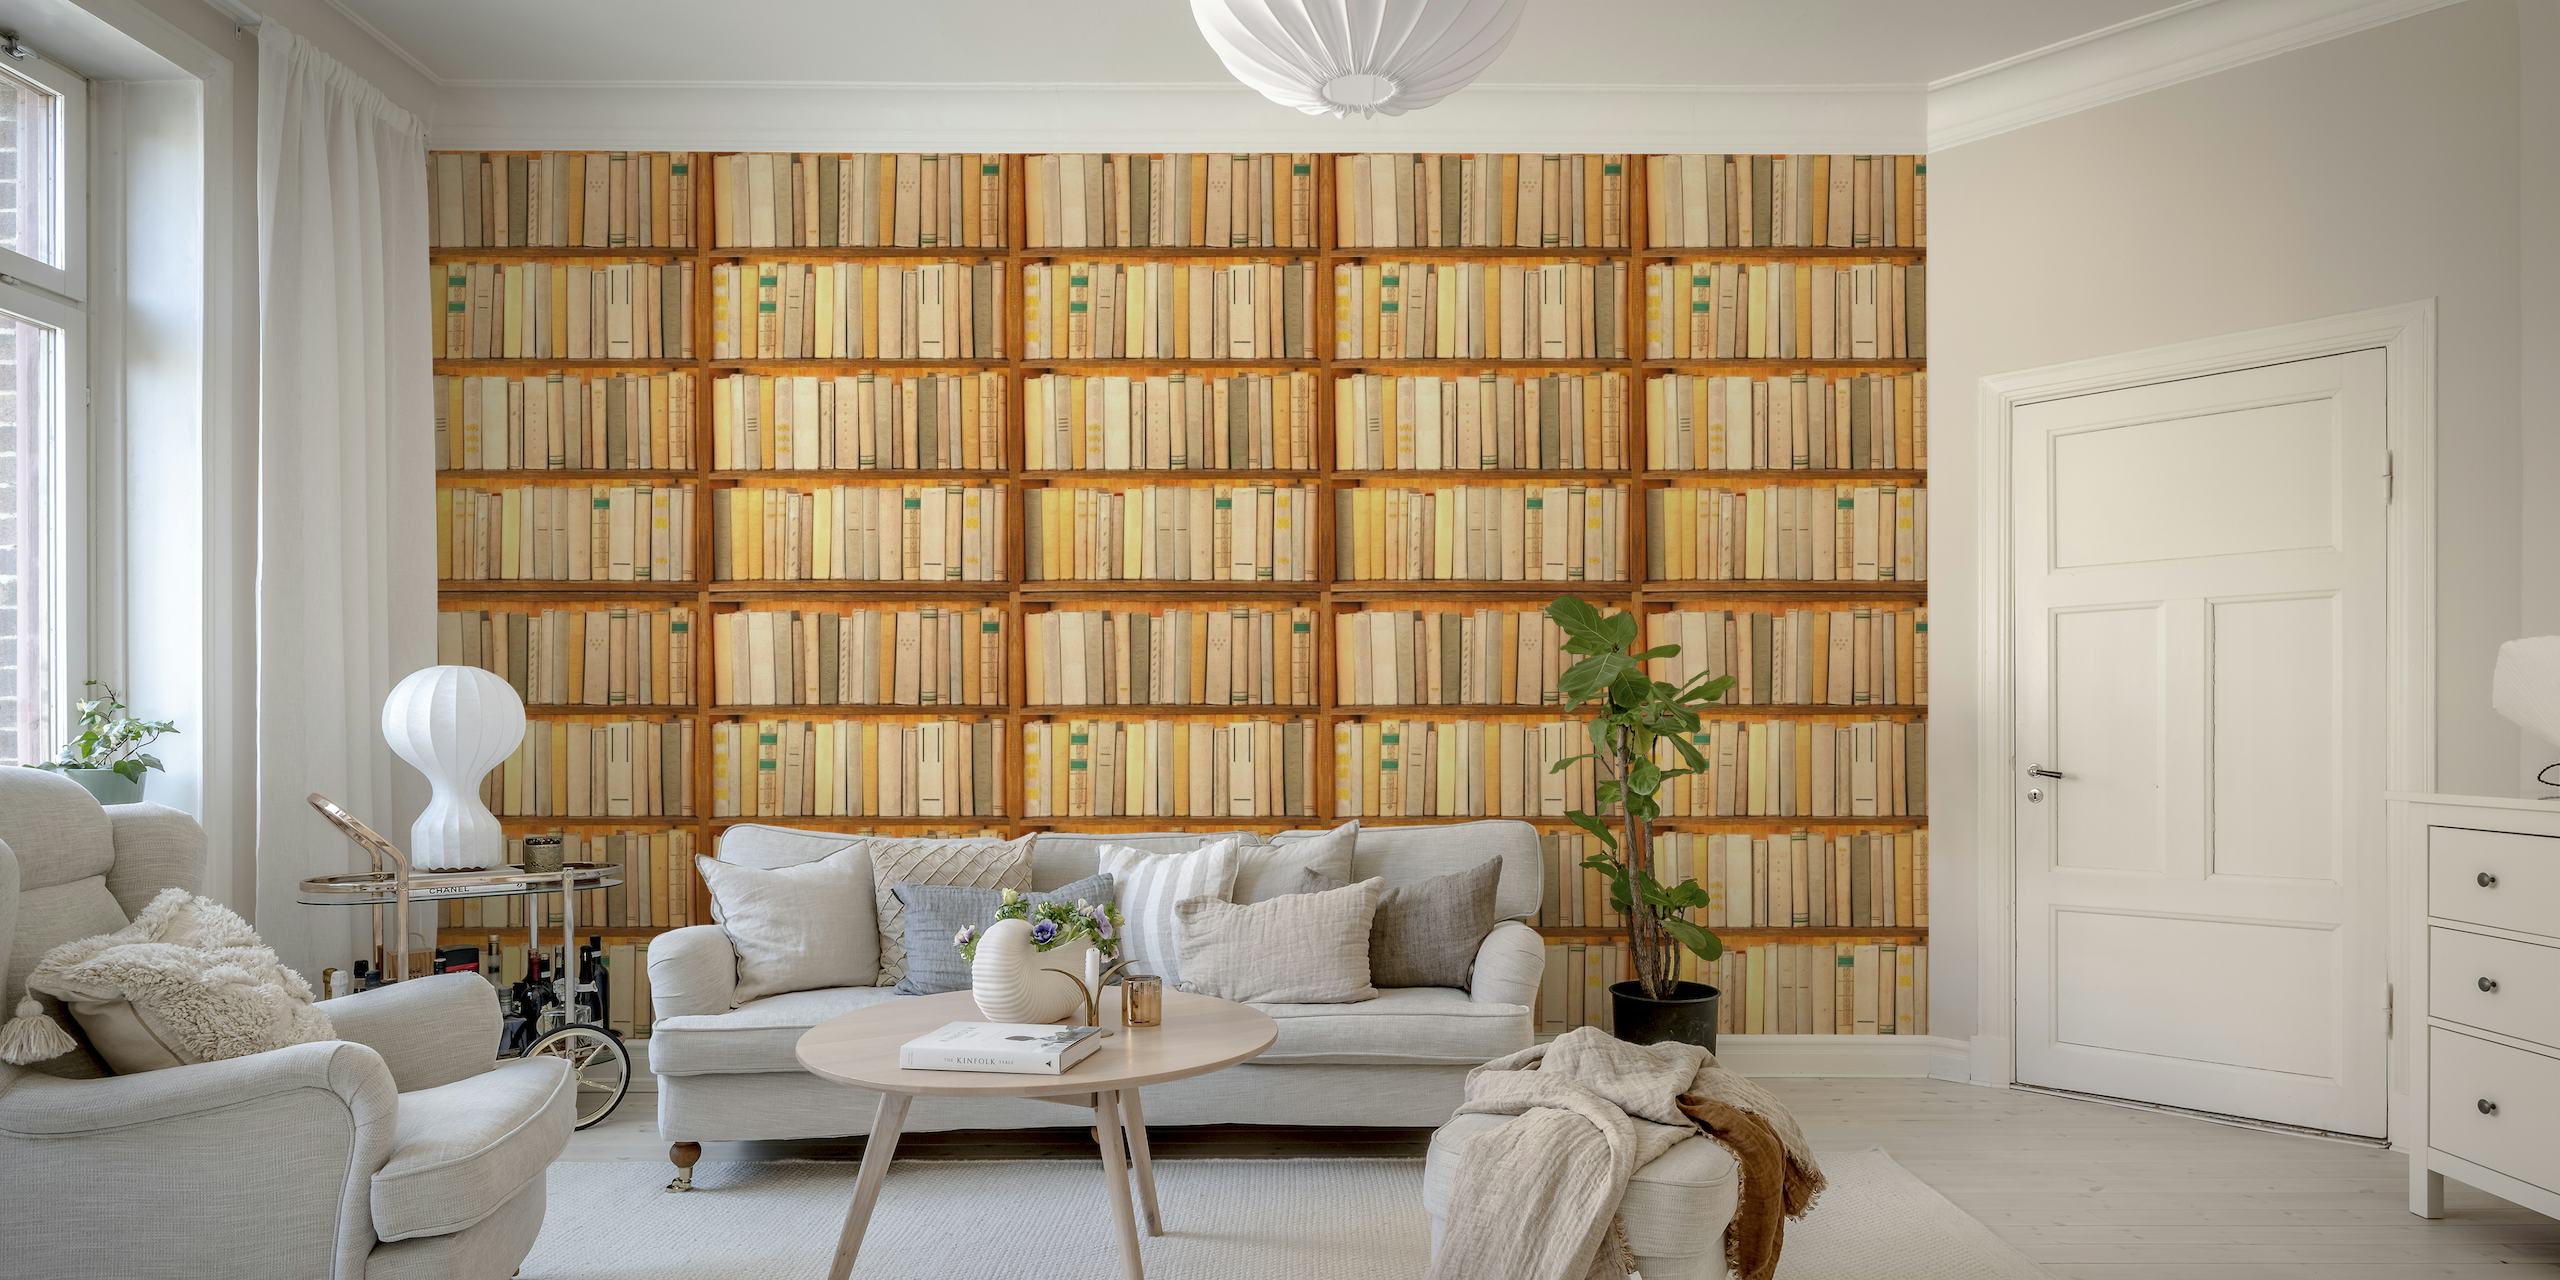 Bookshelf wallpaper